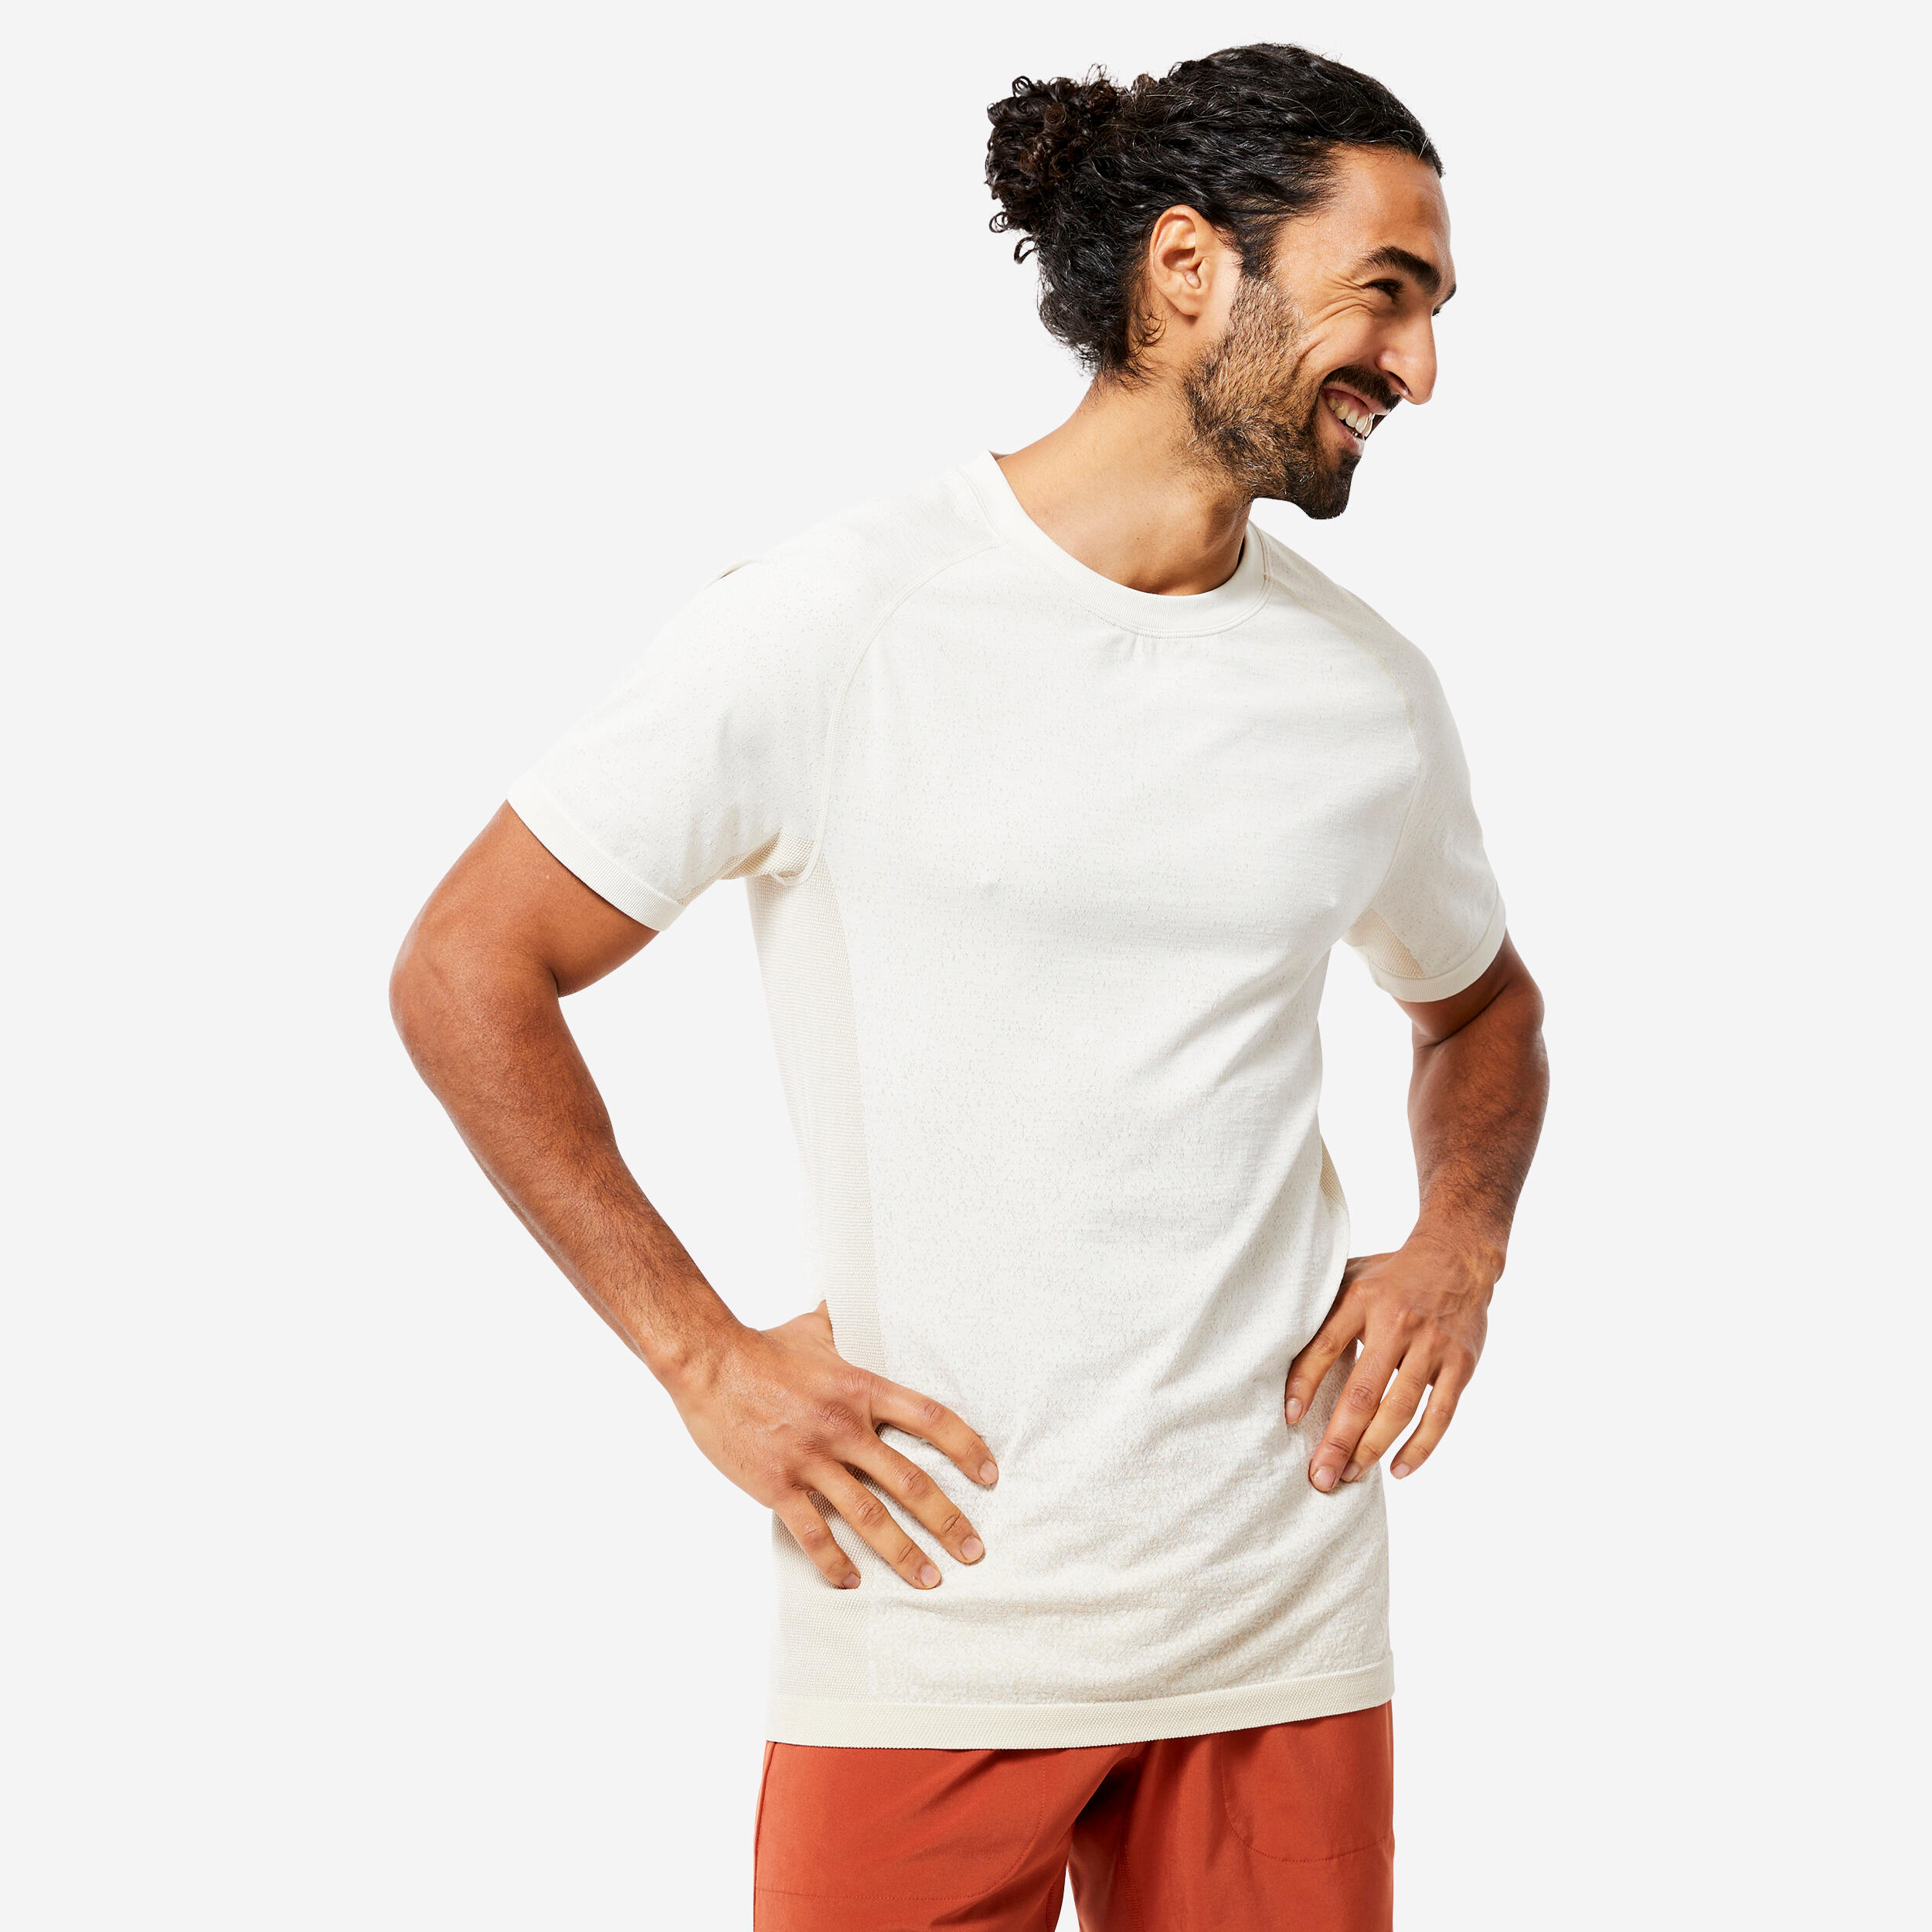 Men's Seamless Short-Sleeved Dynamic Yoga T-Shirt - White KIMJALY ...